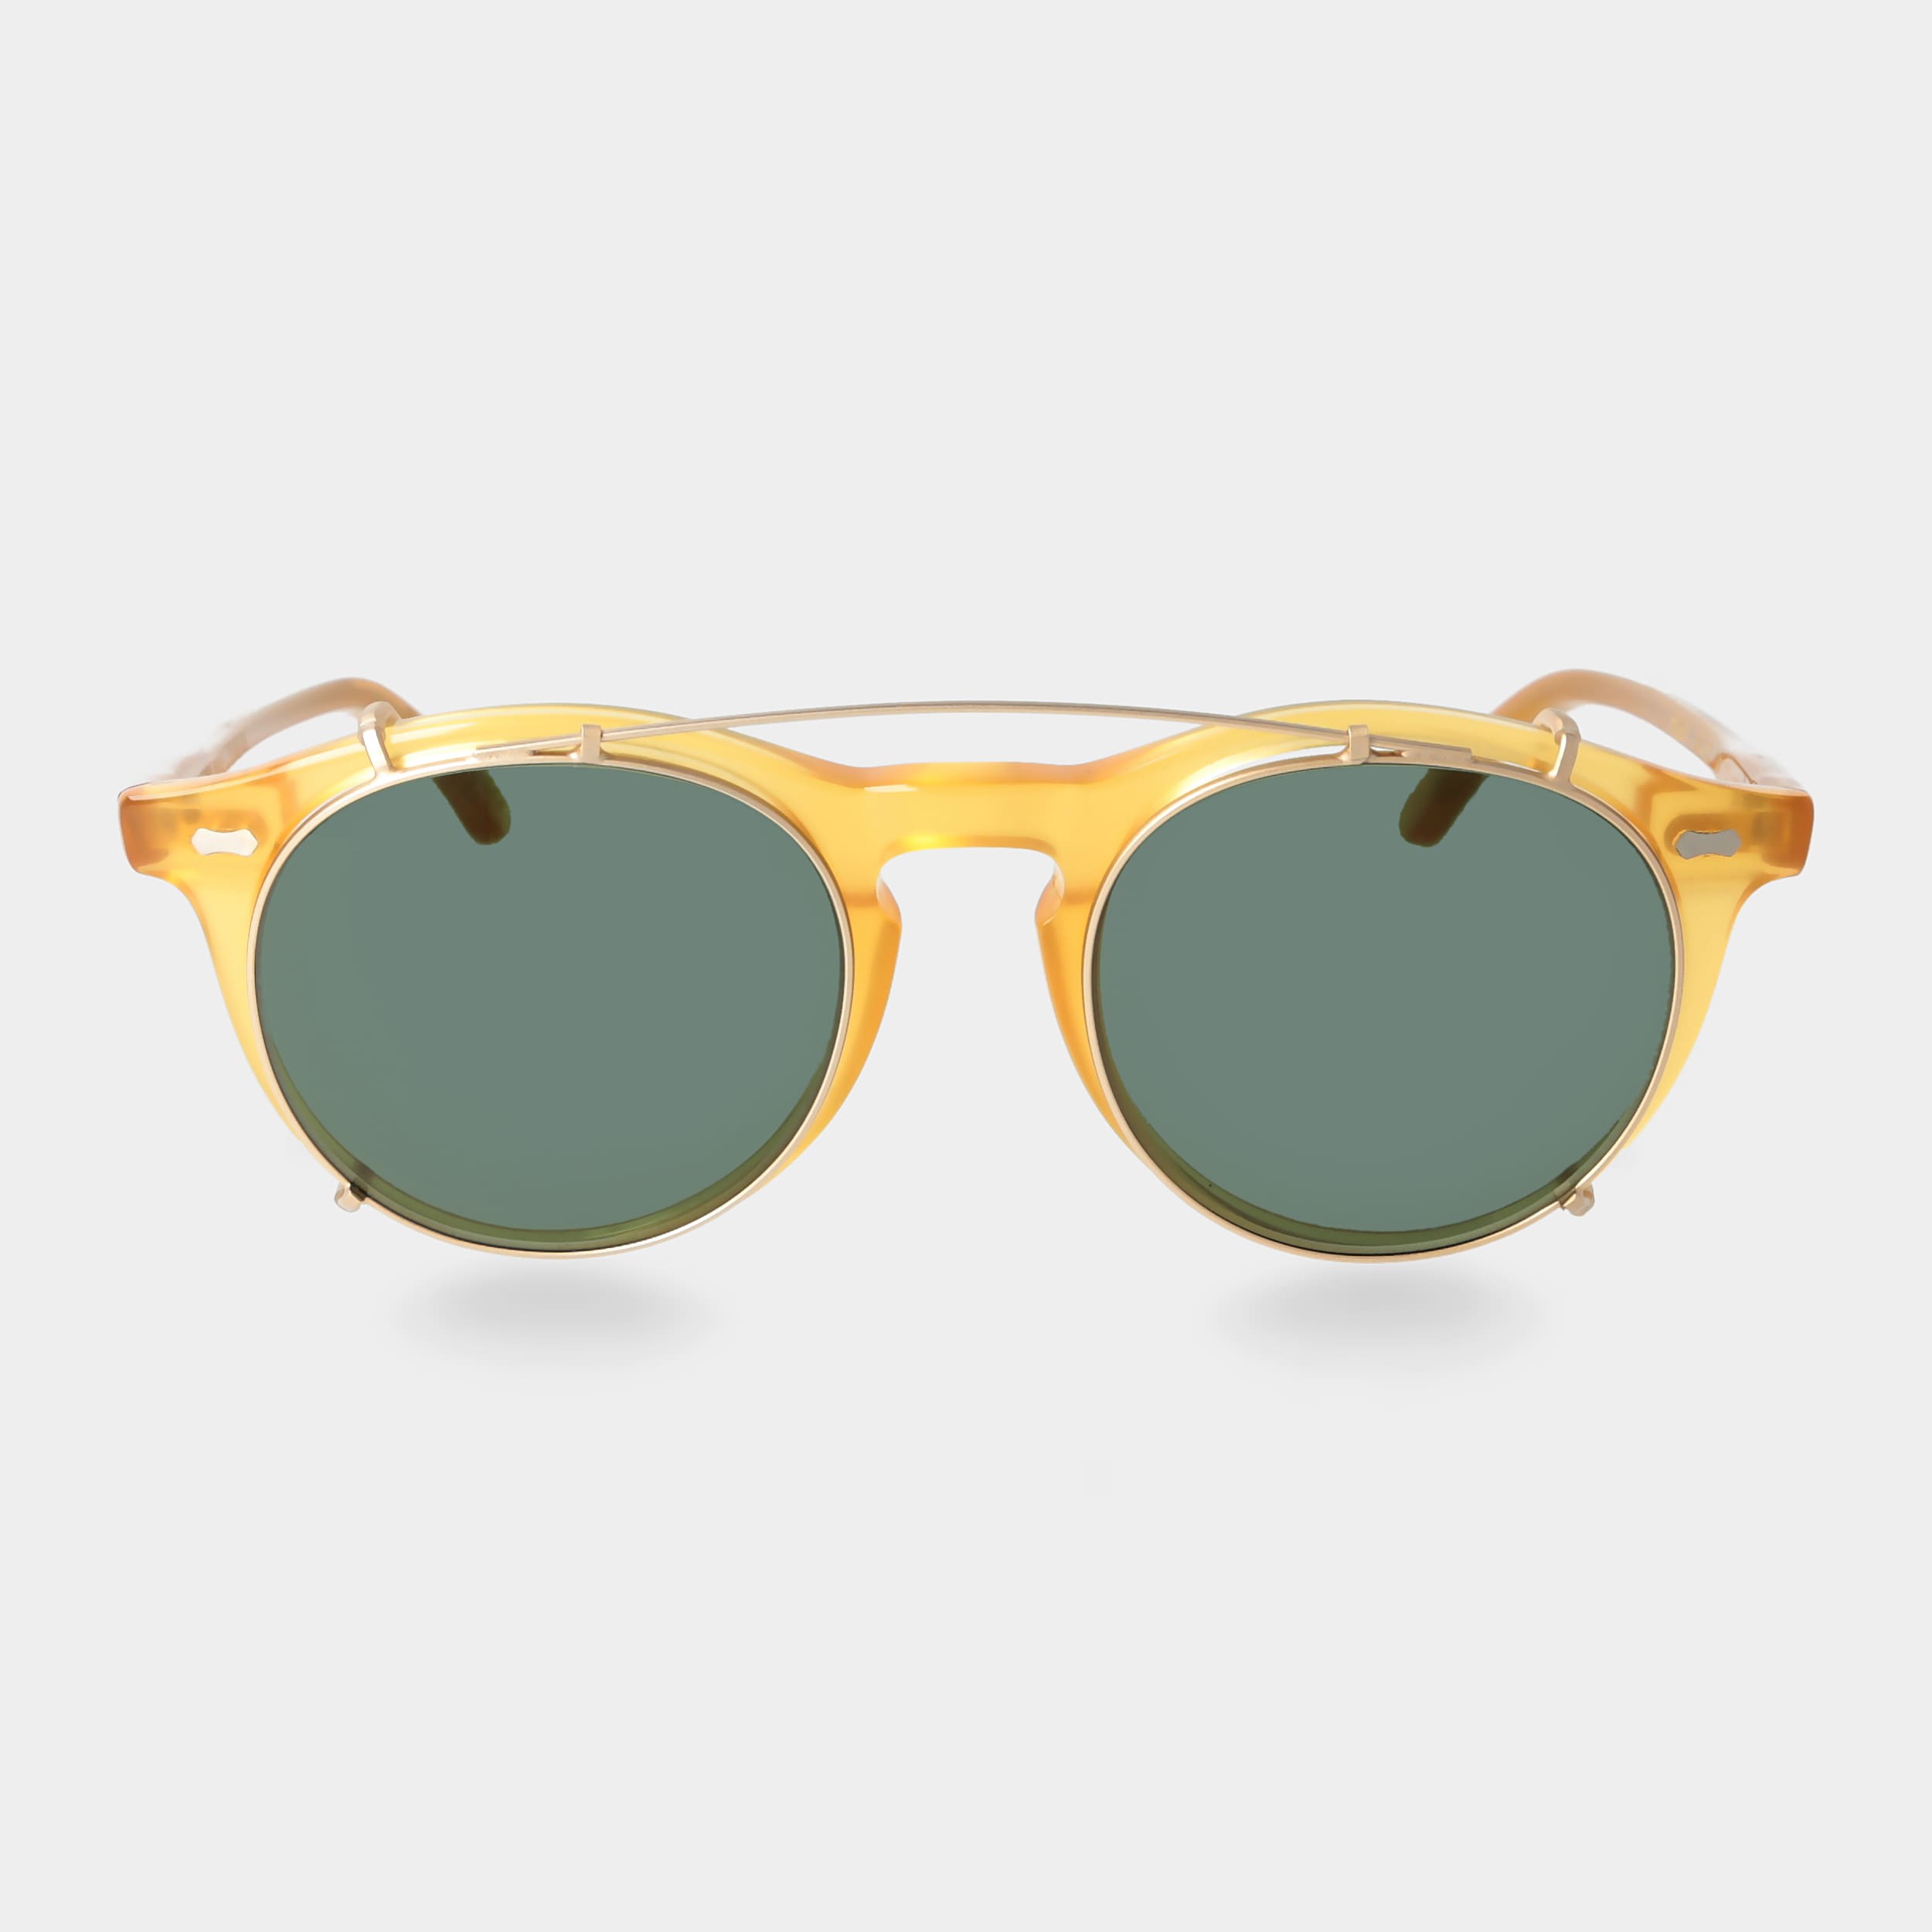 sunglasses-pleat-honey-gold-bottle-green-tbd-eyewear-front